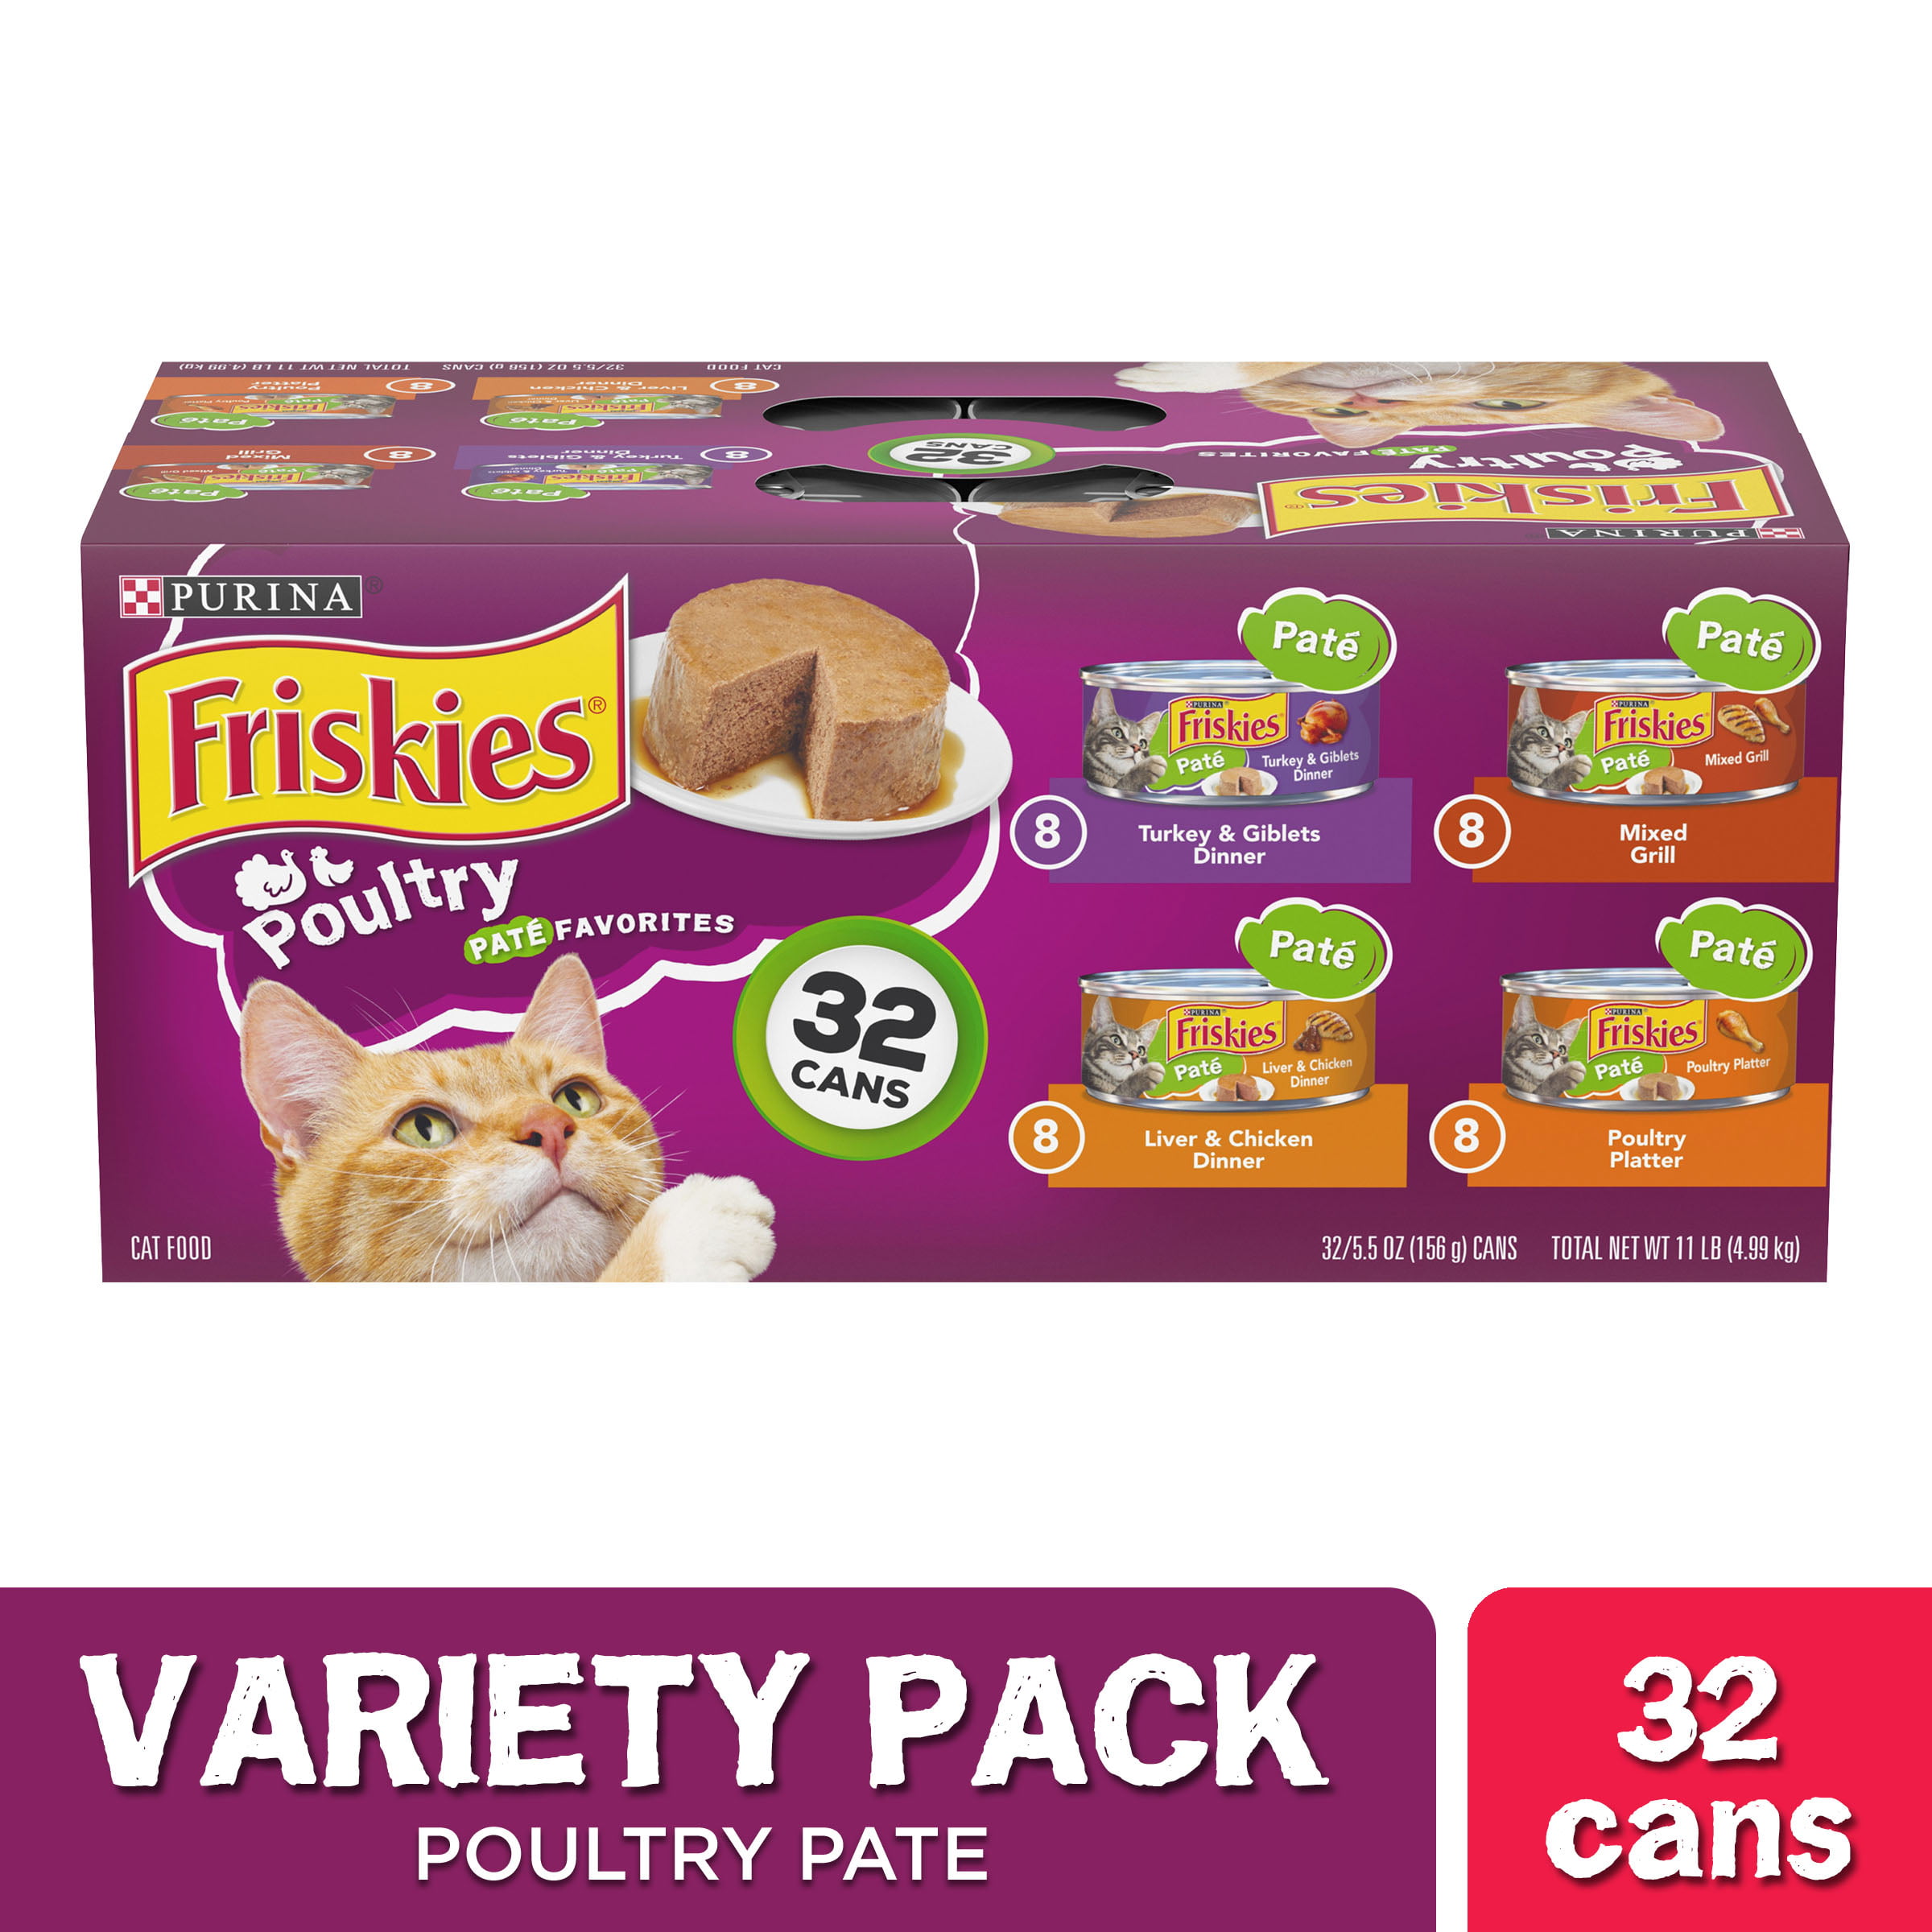 friskies variety pack